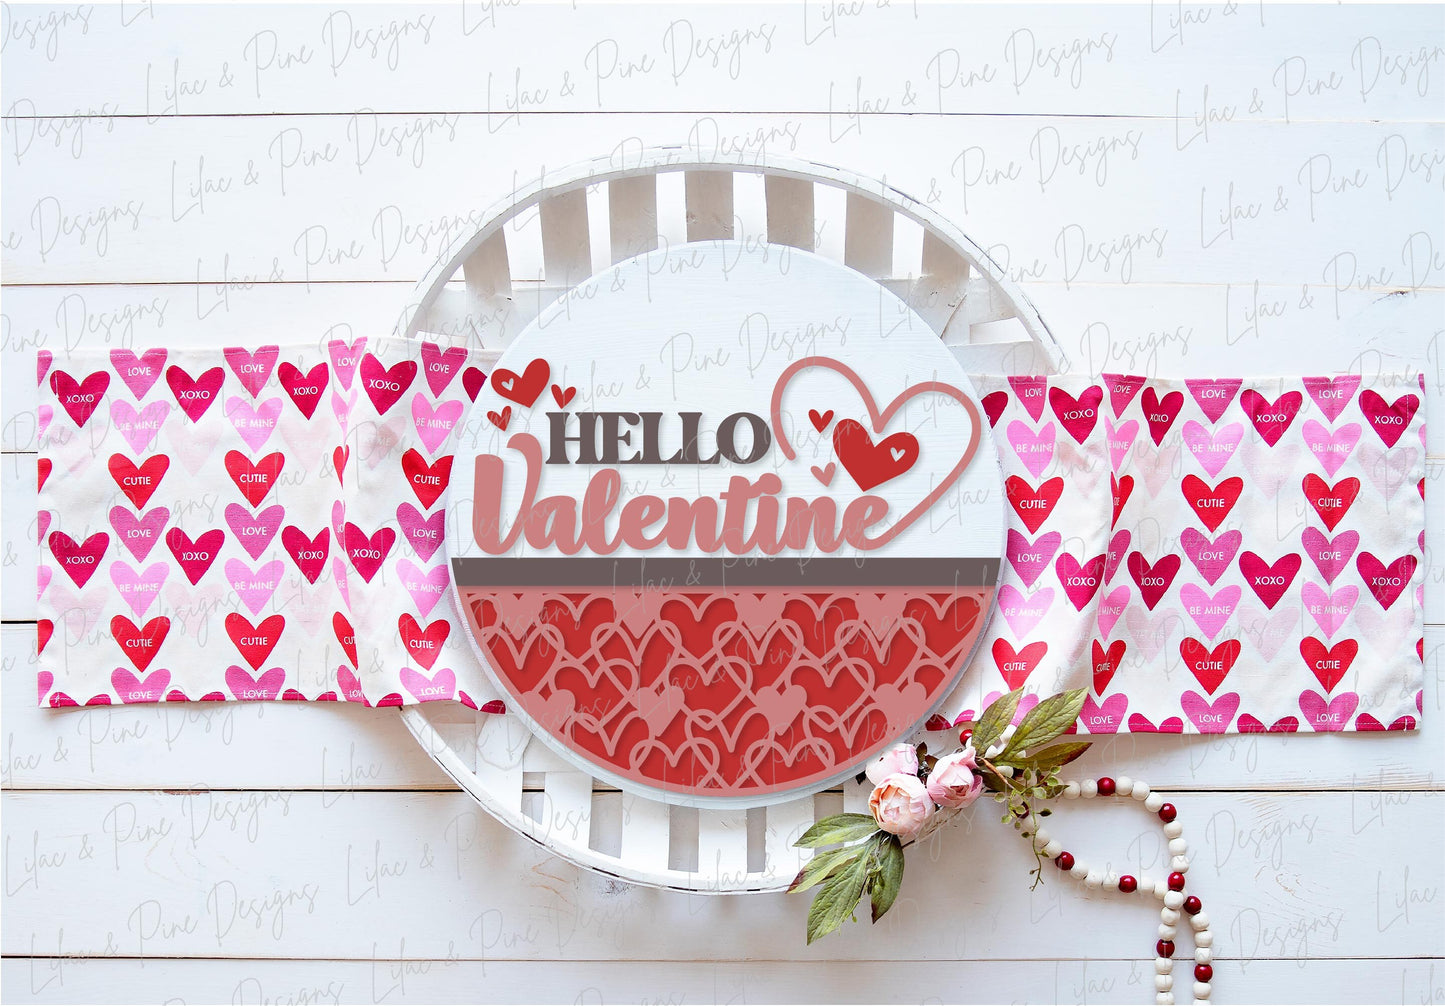 Hello Valentine door hanger SVG, Valentine sign SVG, Welcome sign, heart door round svg, Valentines Day decor, Glowforge SVG, laser cut file